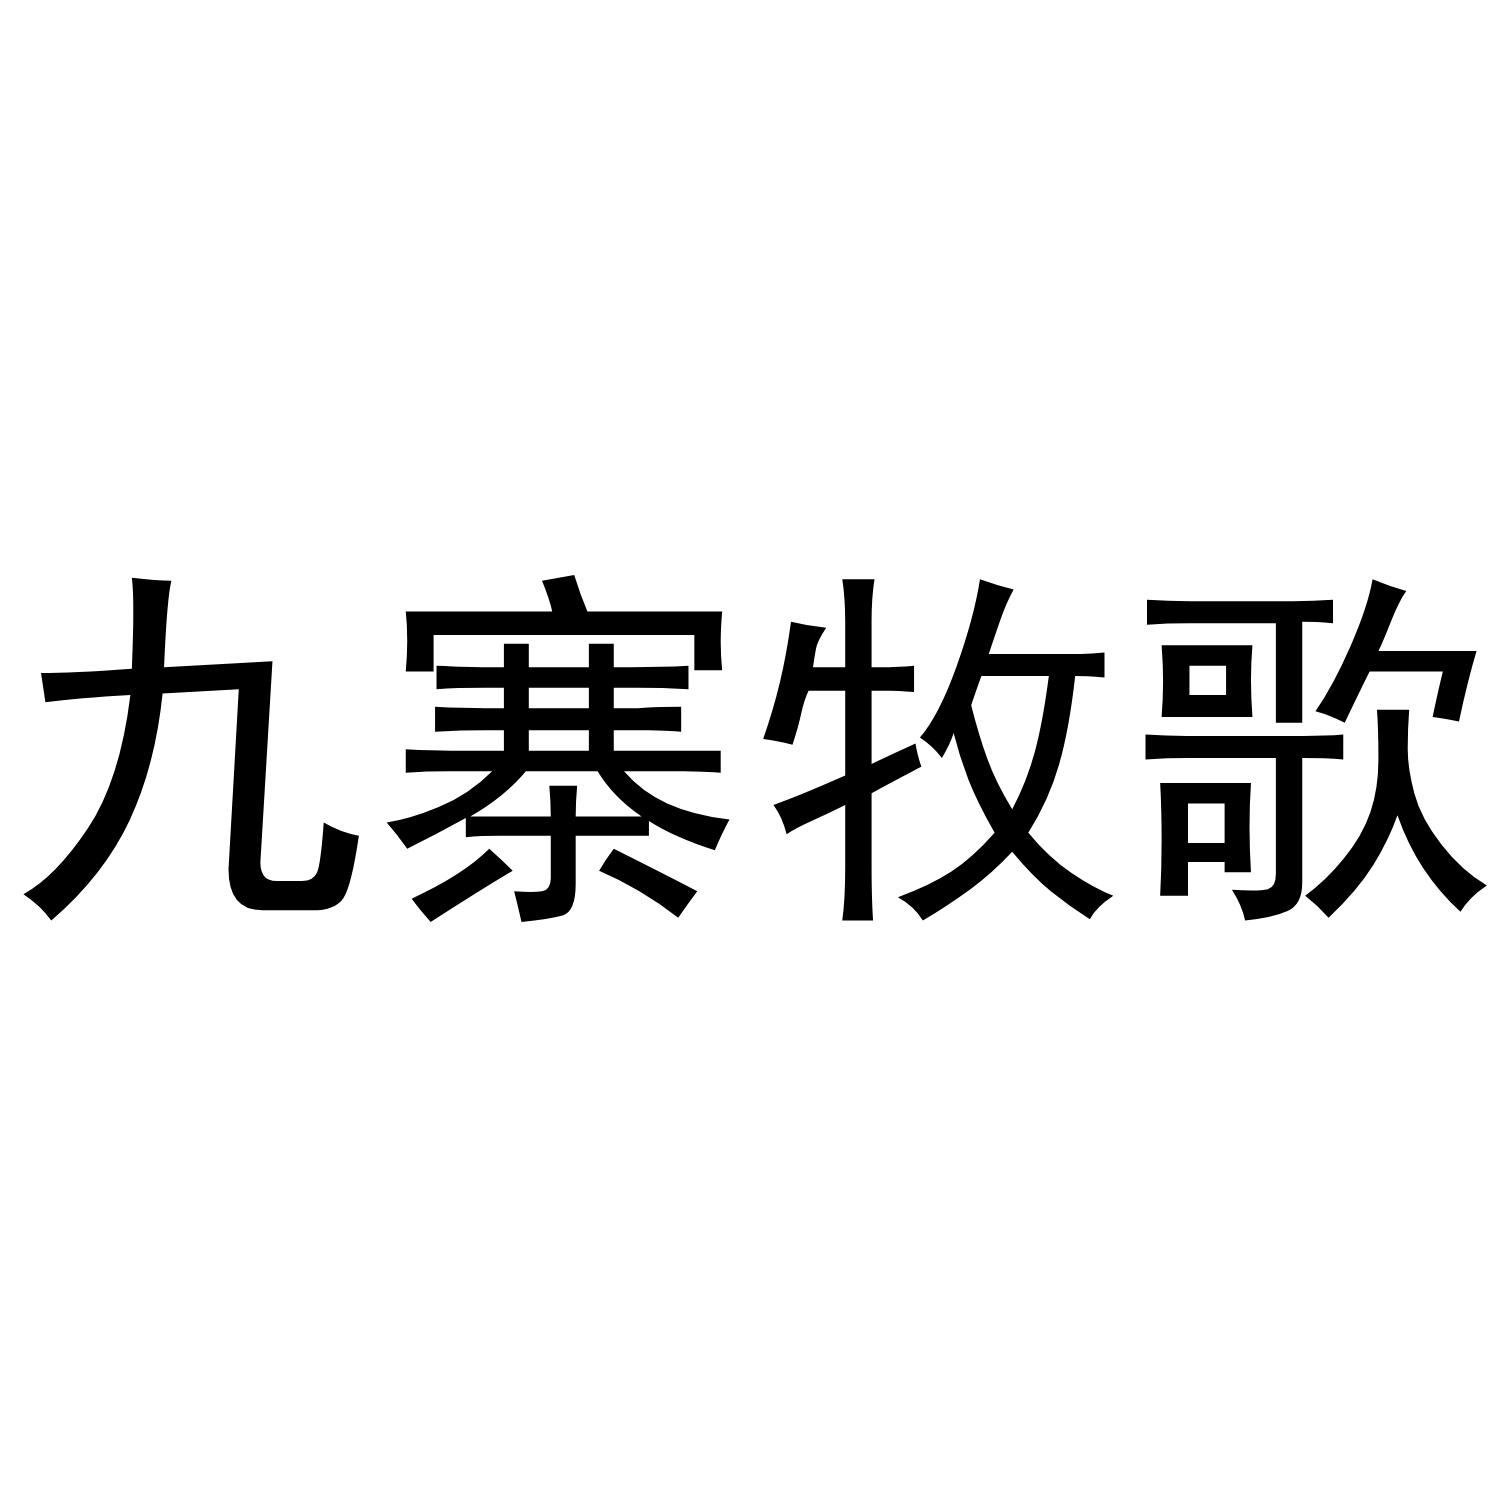 九寨牧歌logo